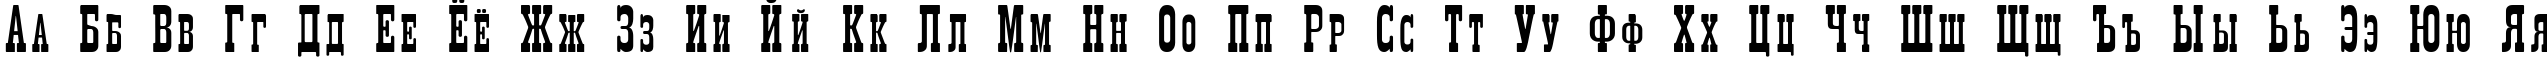 Пример написания русского алфавита шрифтом Decree Narrow